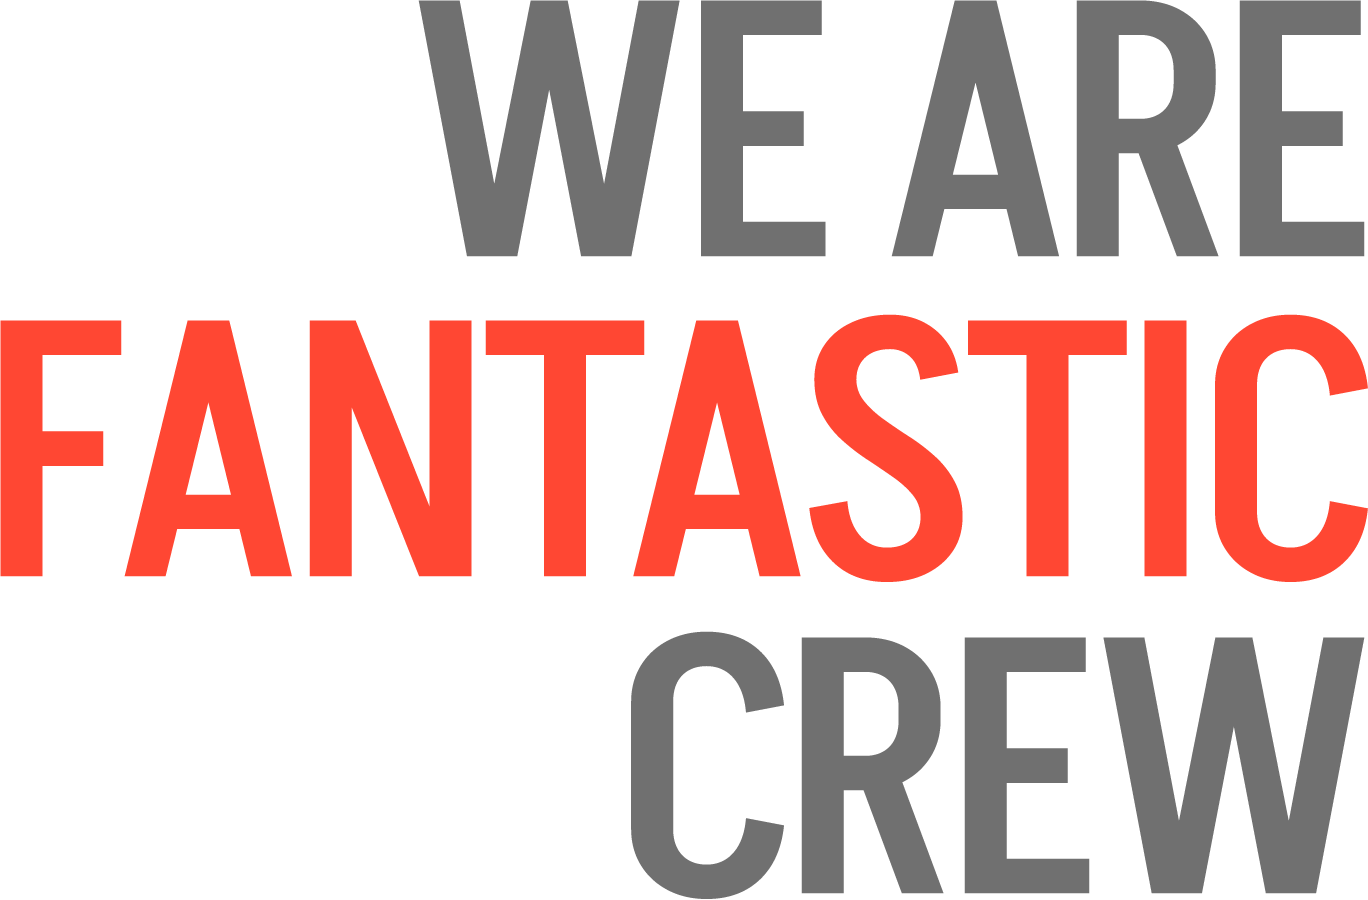 we are fantastic crew